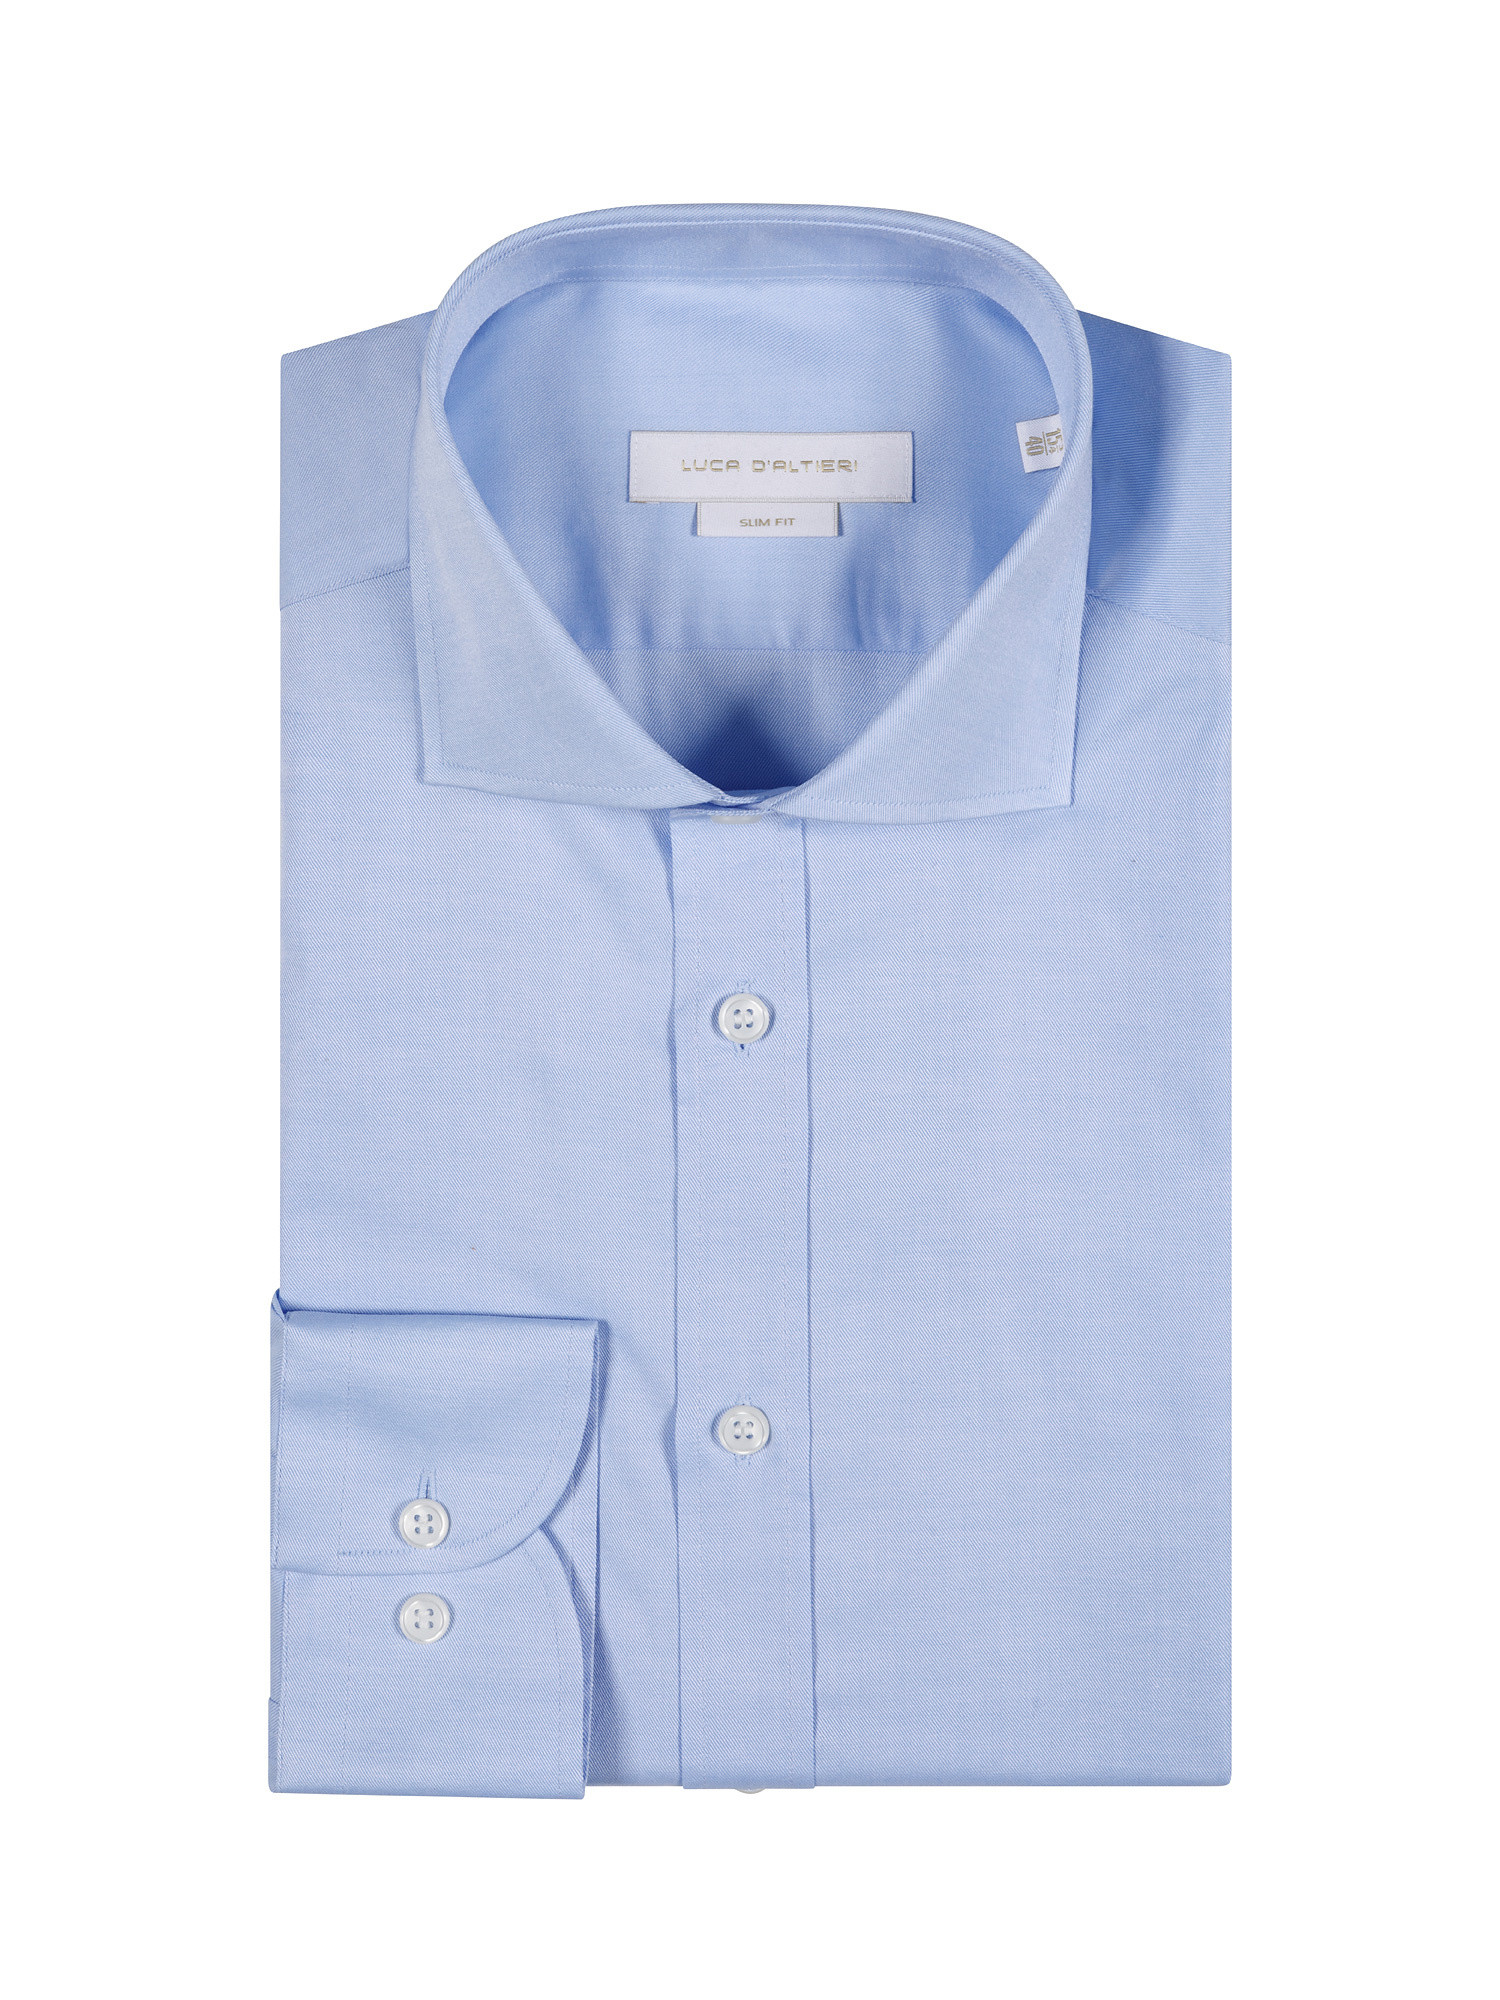 Camicia slim fit in twill di cotone, Azzurro, large image number 2